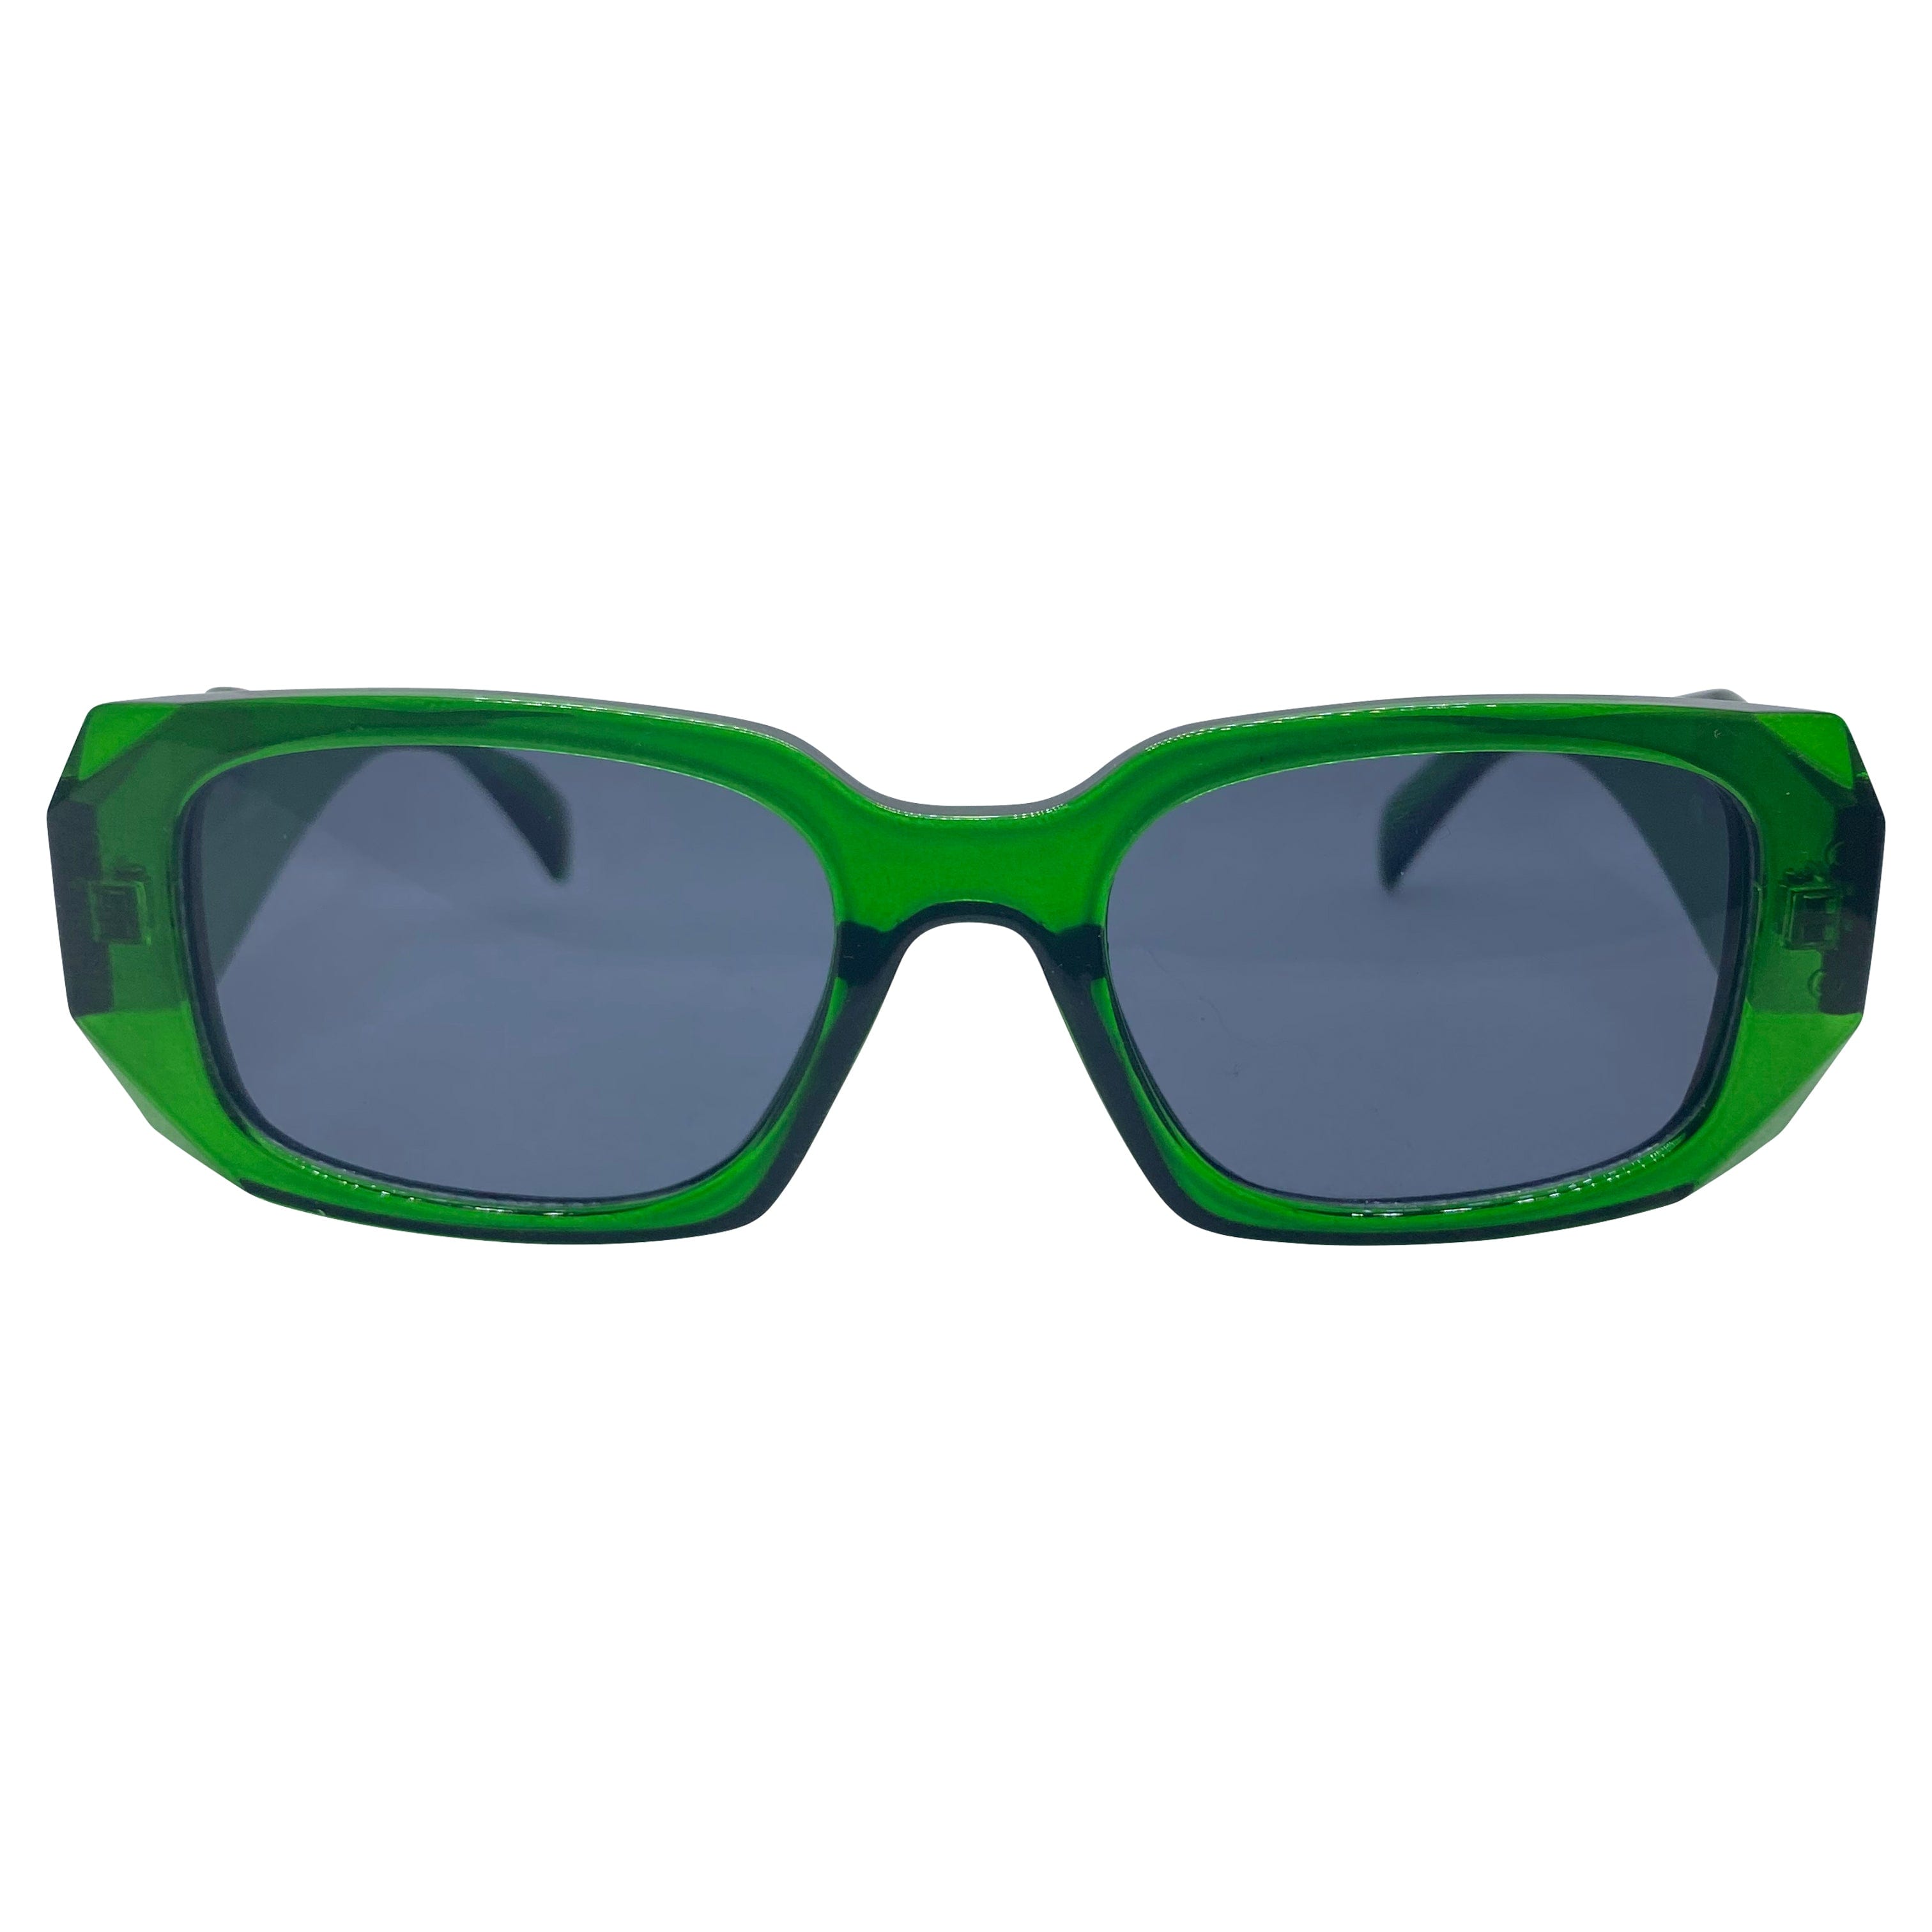 KNIGHT Green/SD Square Sunglasses